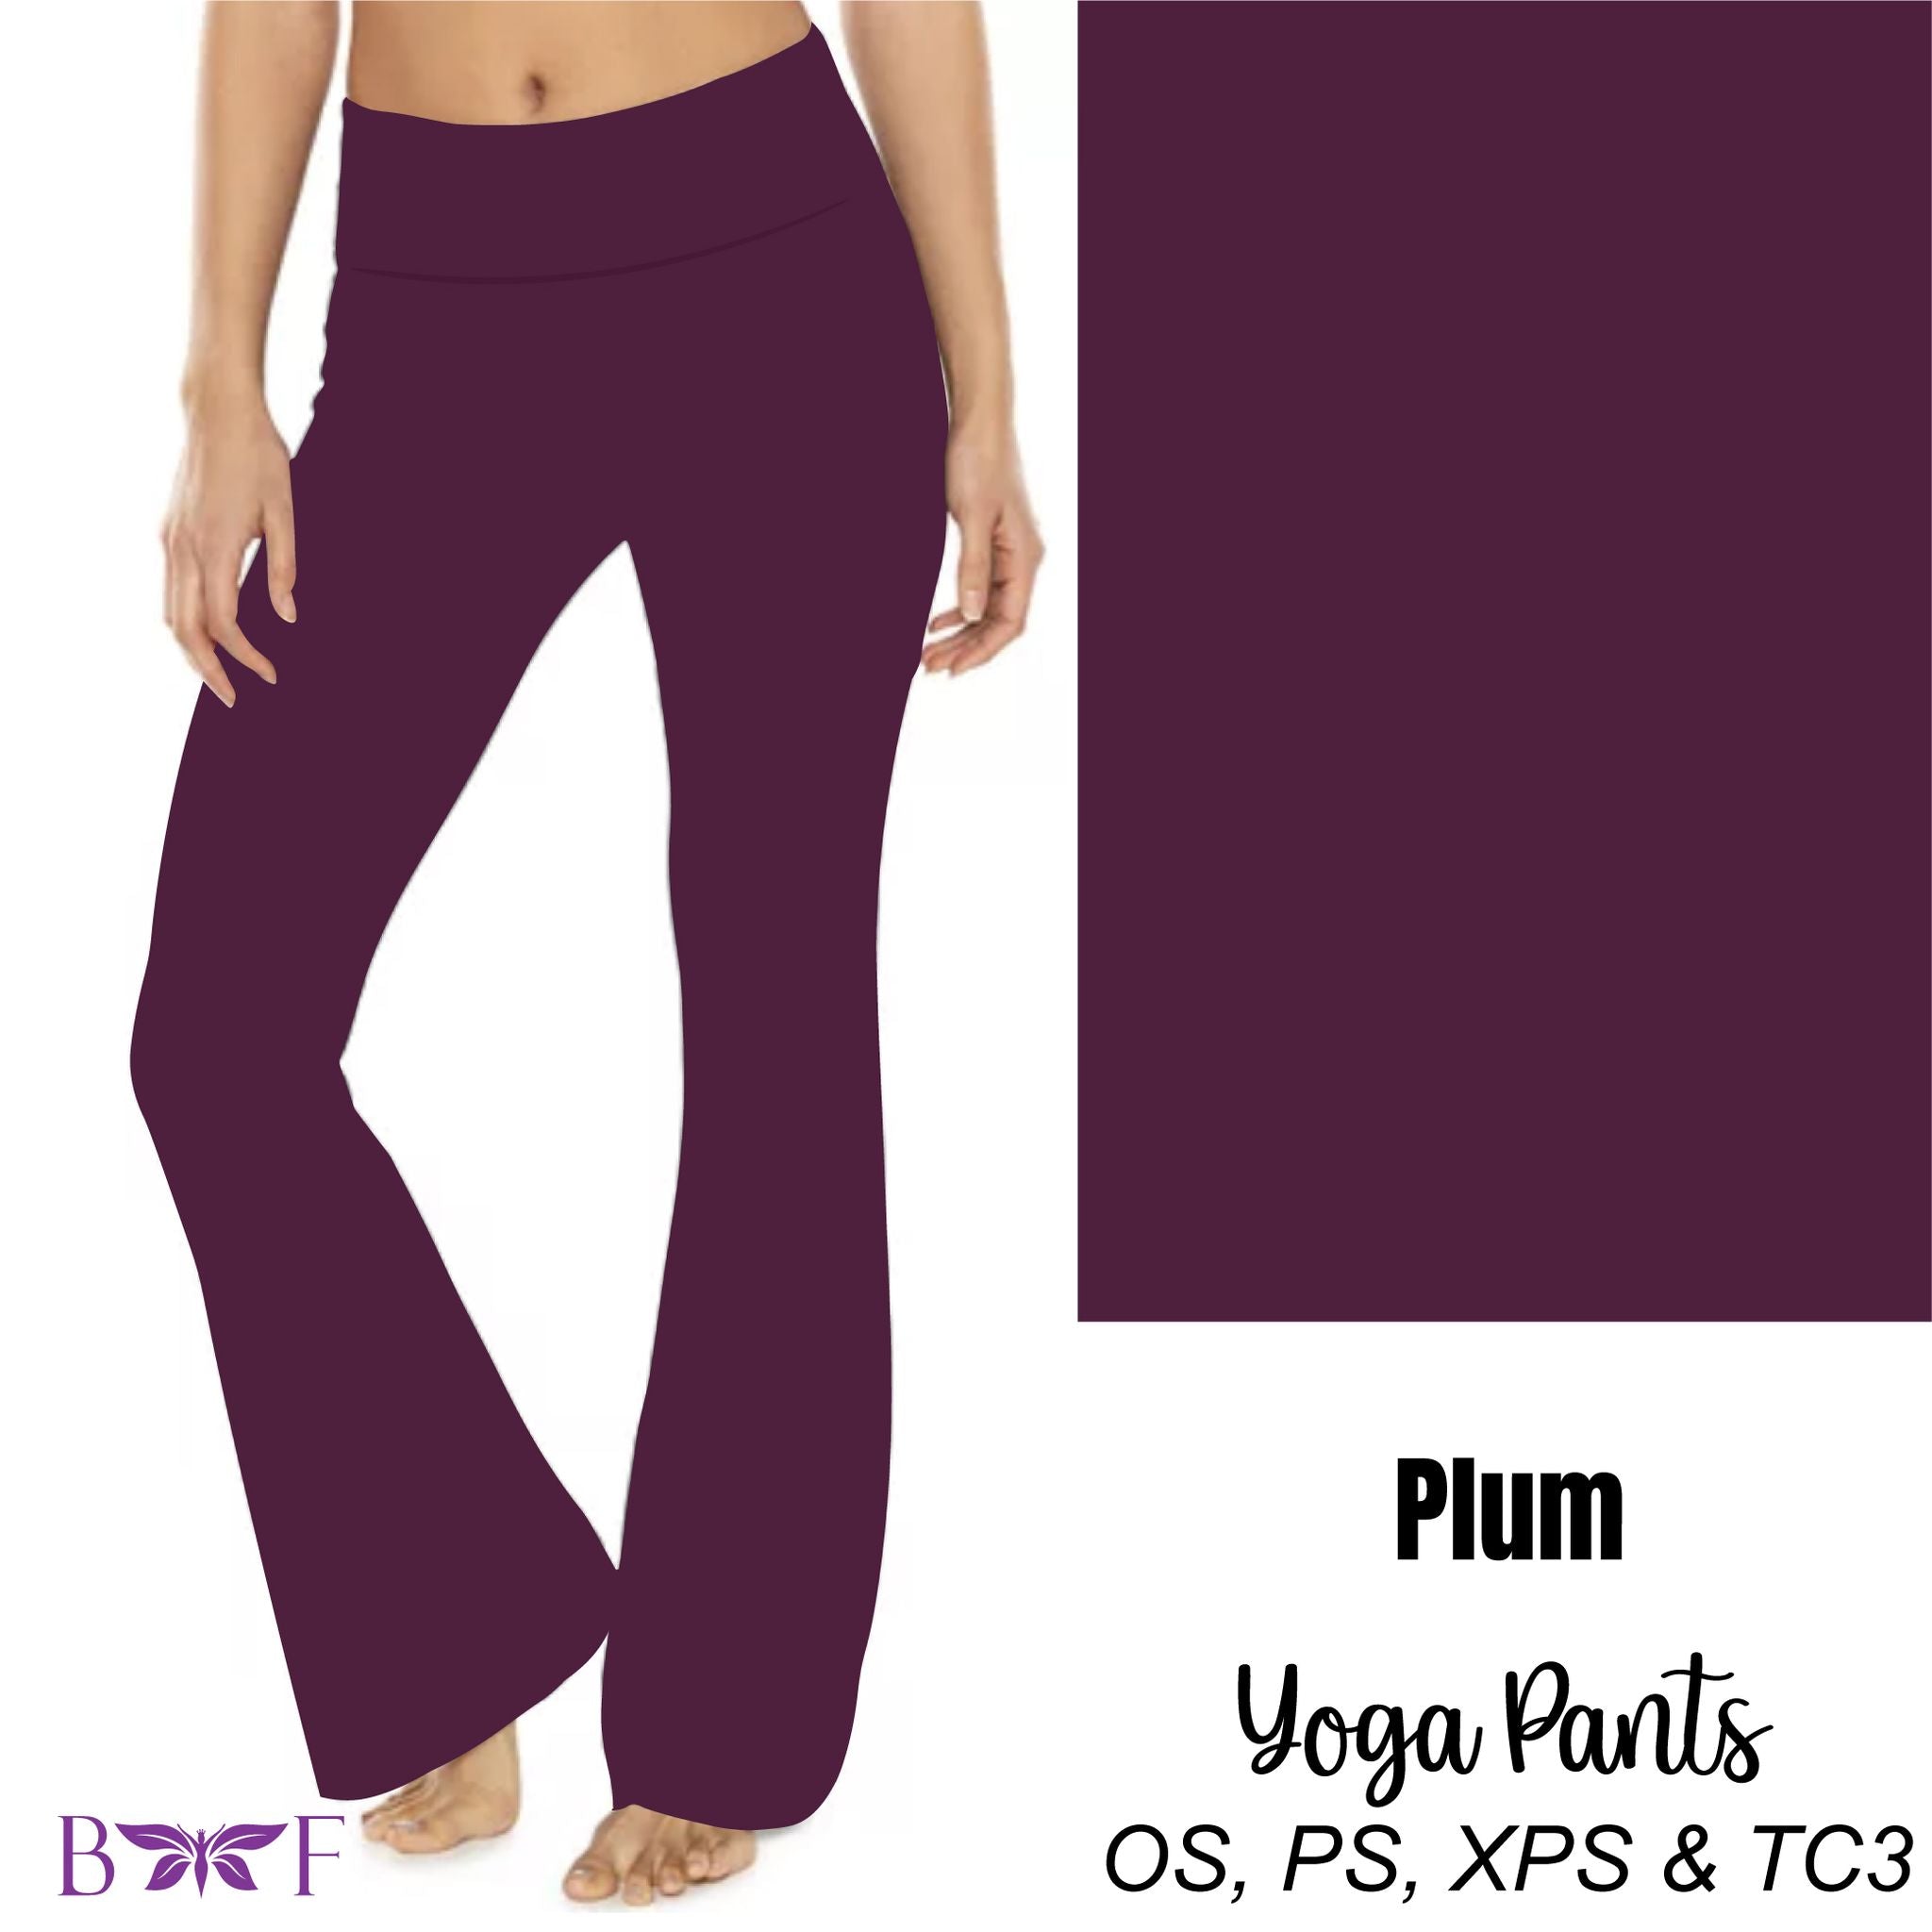 Plum purple yoga pants